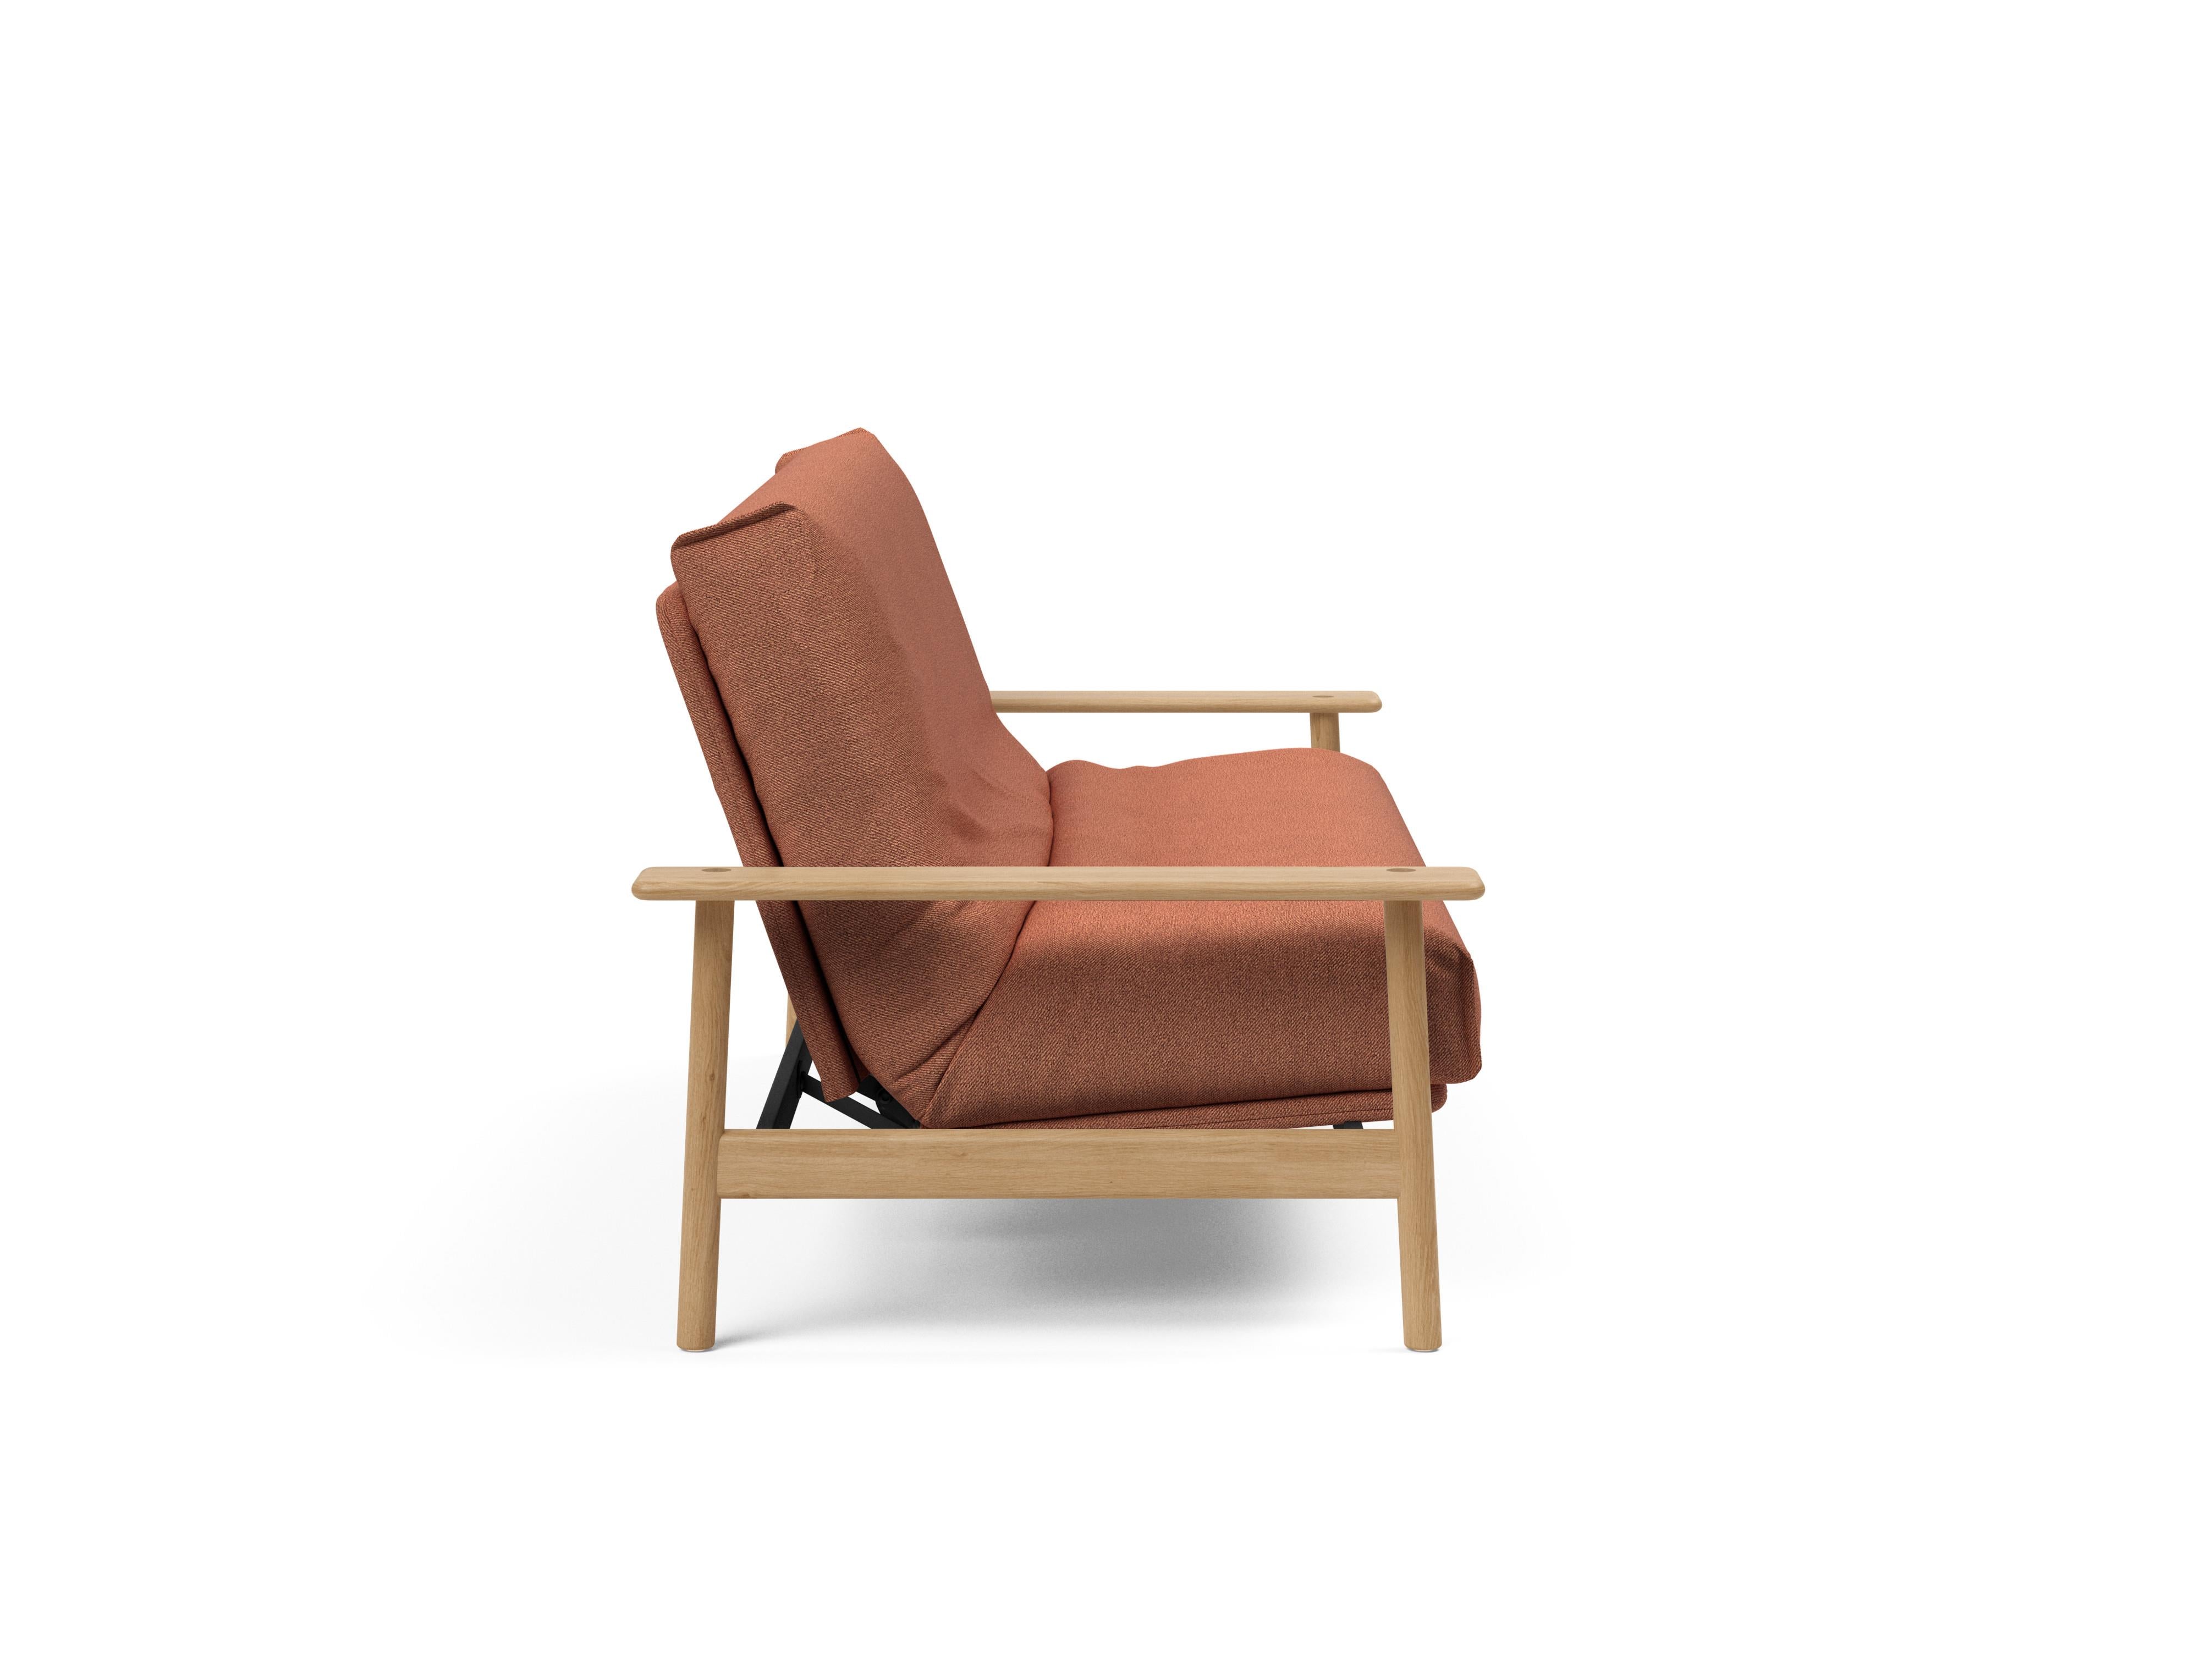 Balder Bettsofa Nordic in Rust 301 präsentiert im Onlineshop von KAQTU Design AG. Bettsofa ist von Innovation Living